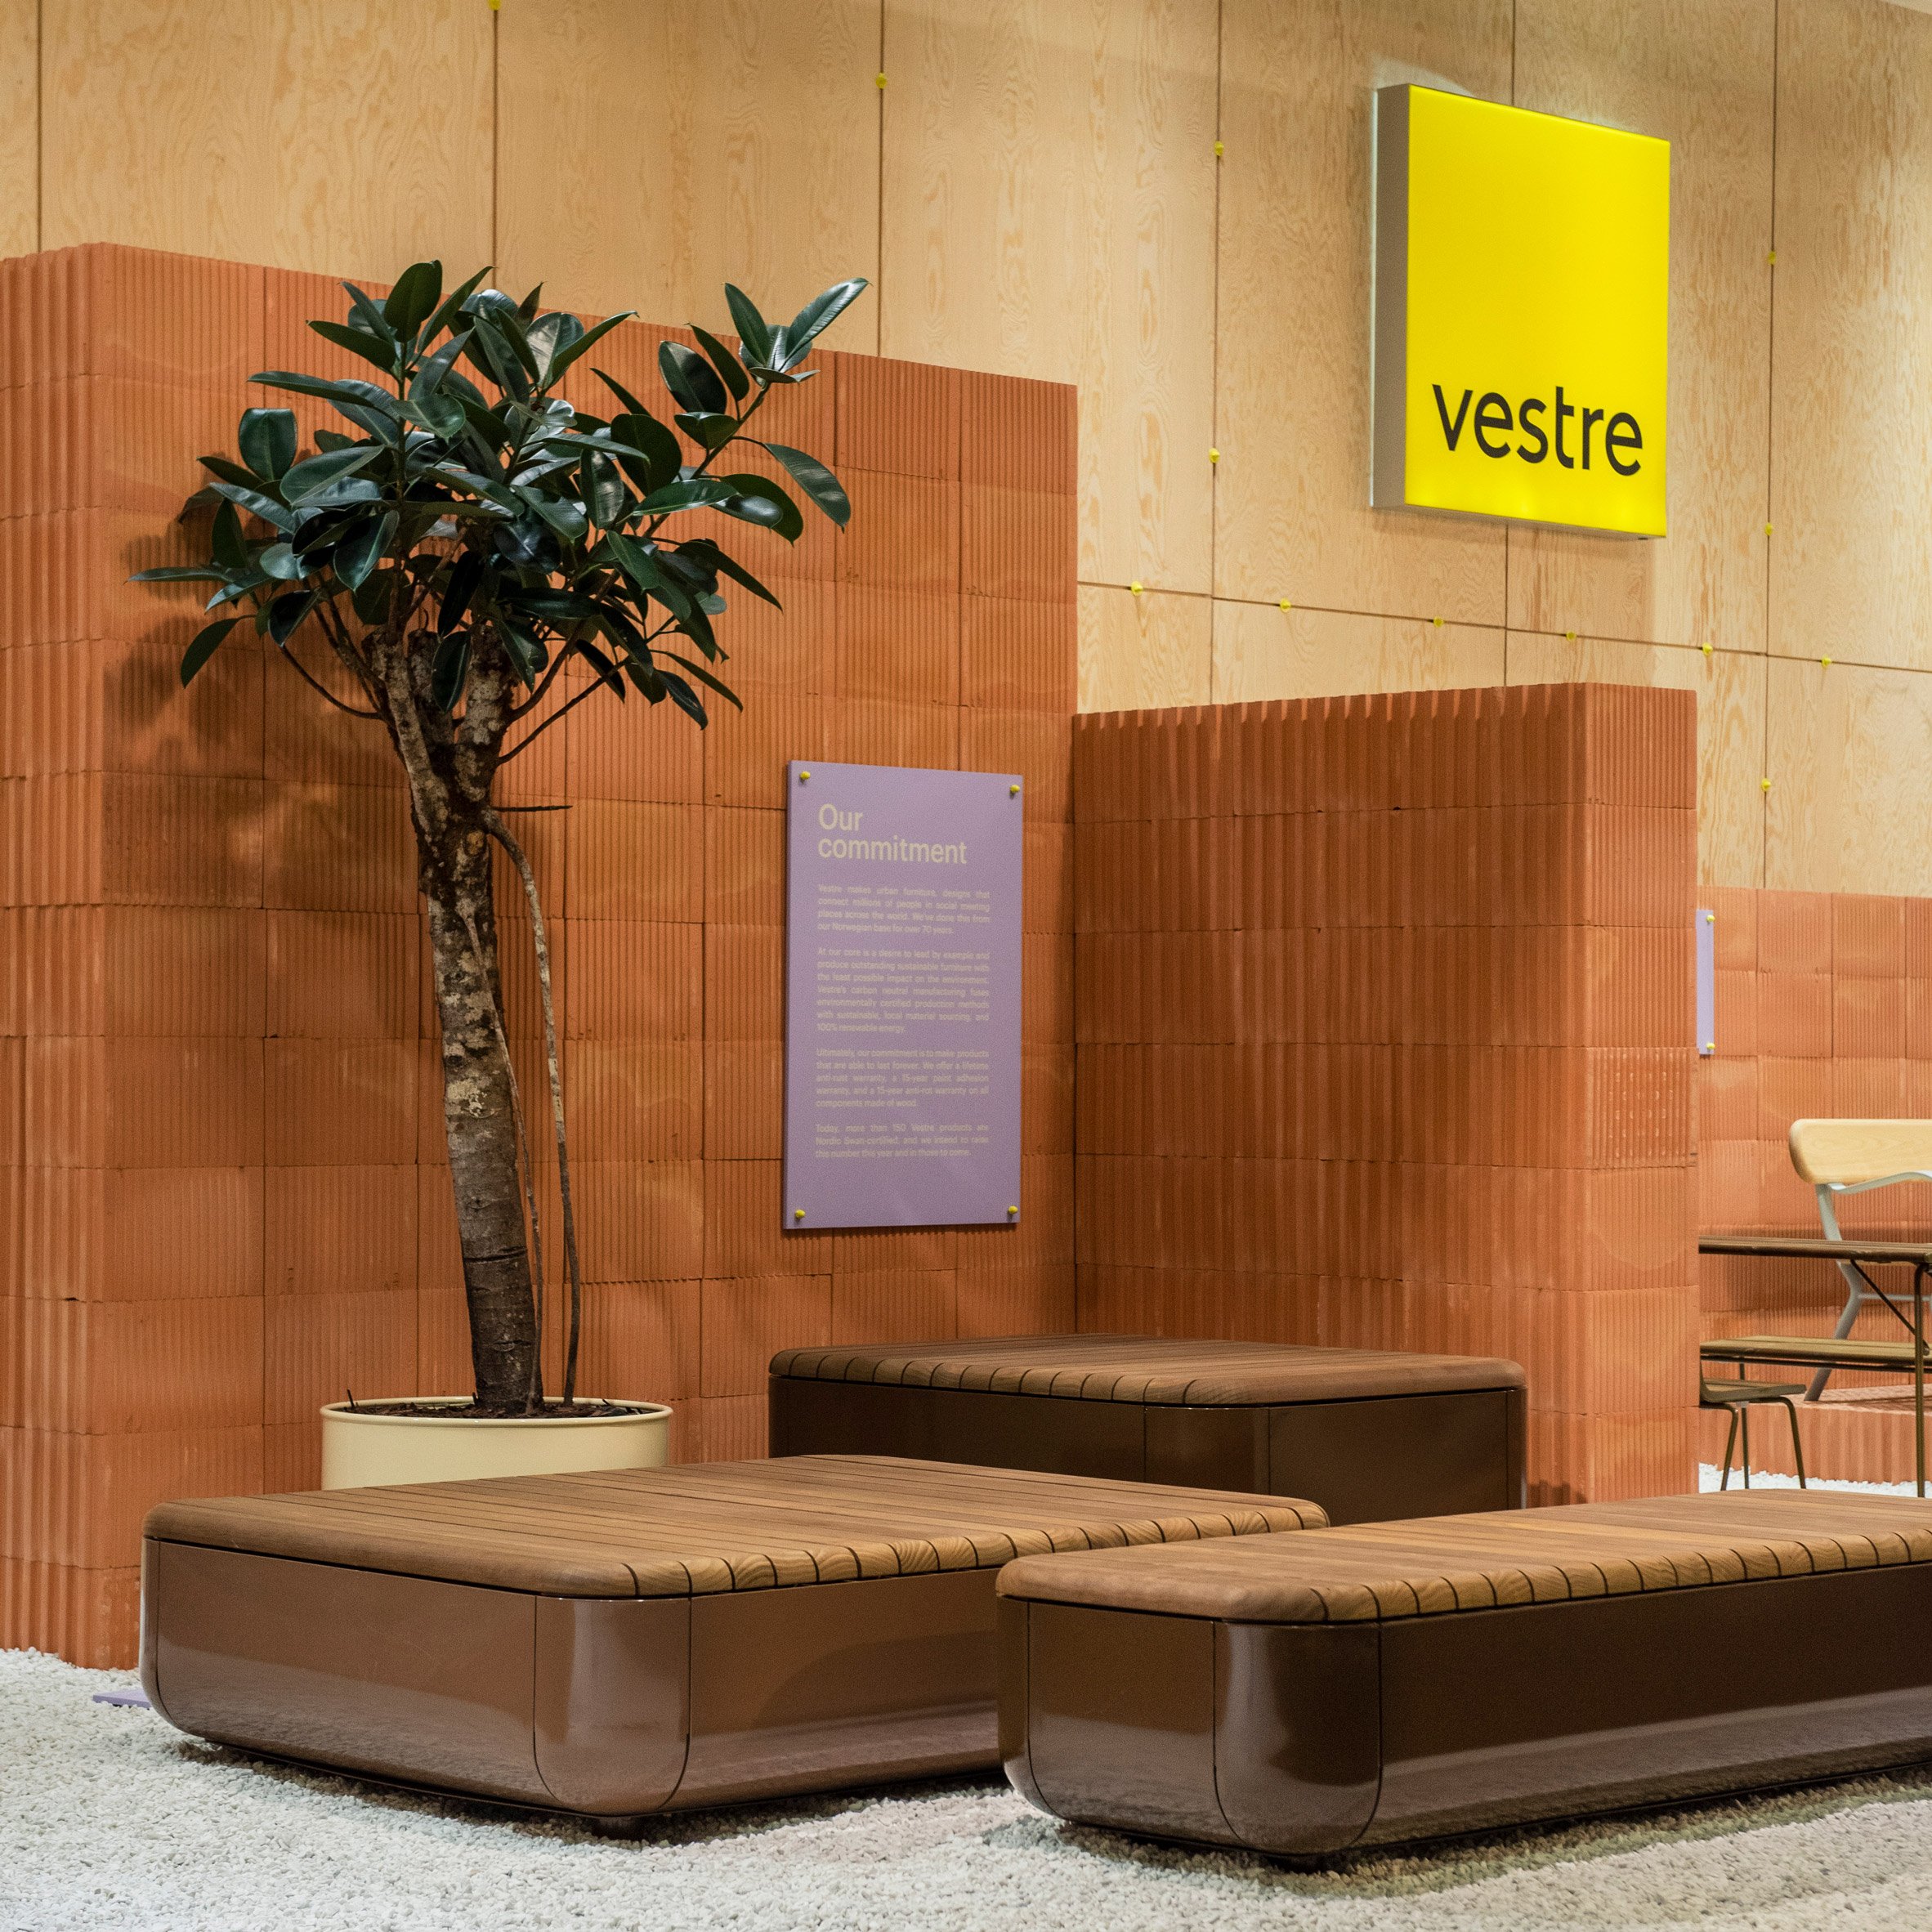 Vestre Stand by Note Design Studio